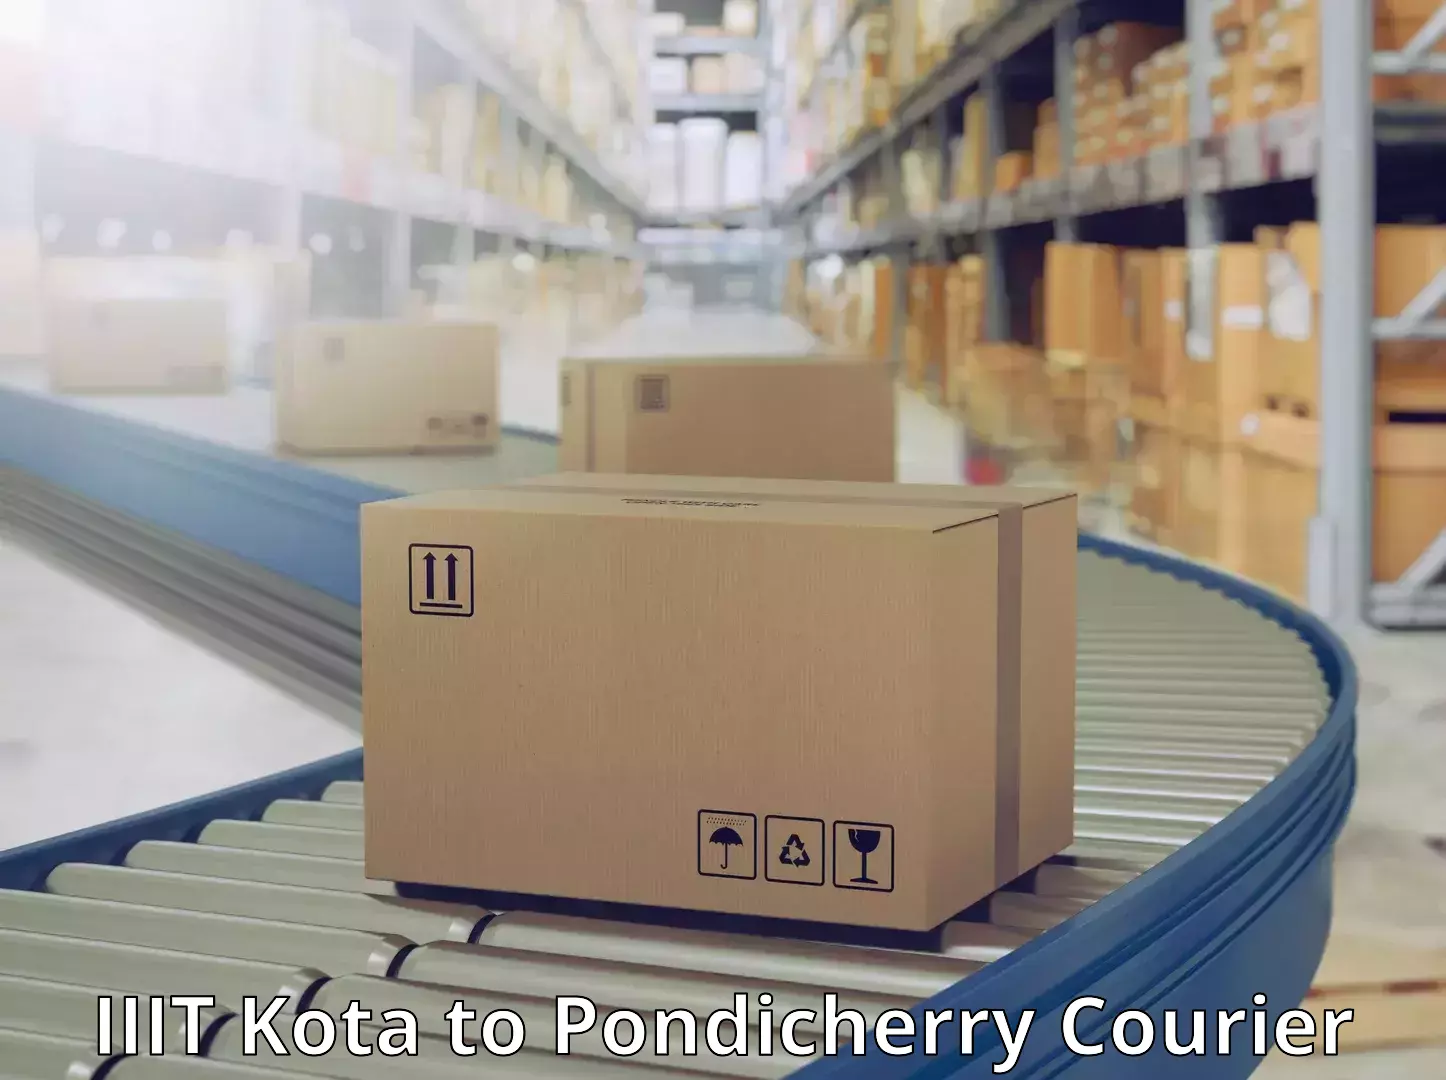 Local delivery service IIIT Kota to Pondicherry